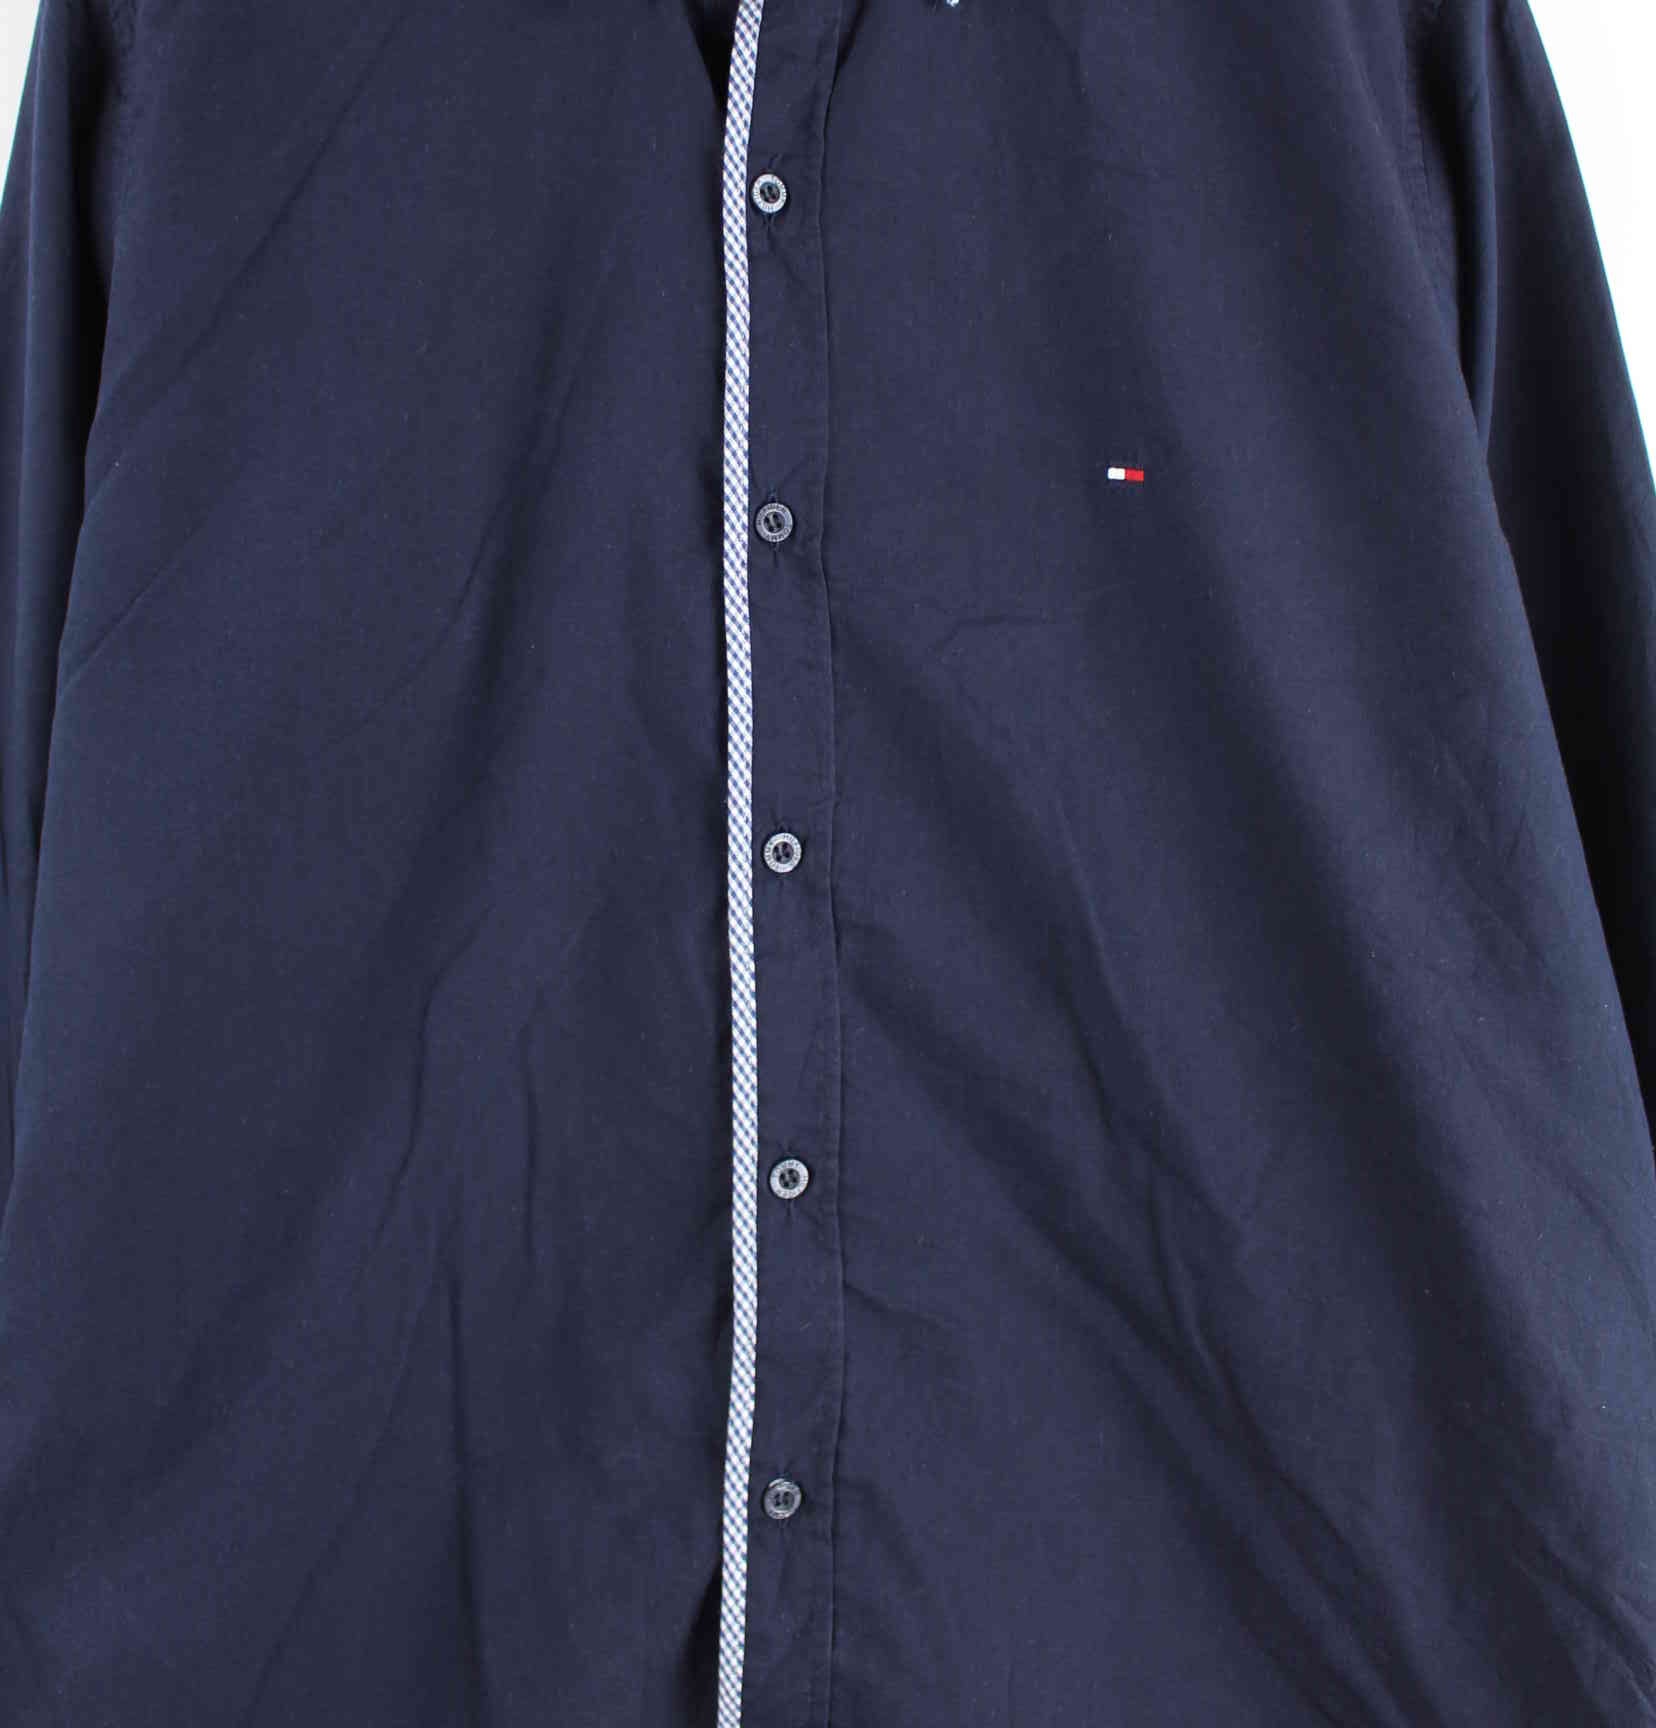 Tommy Hilfiger Basic Slim Fit Hemd Blau L (detail image 1)